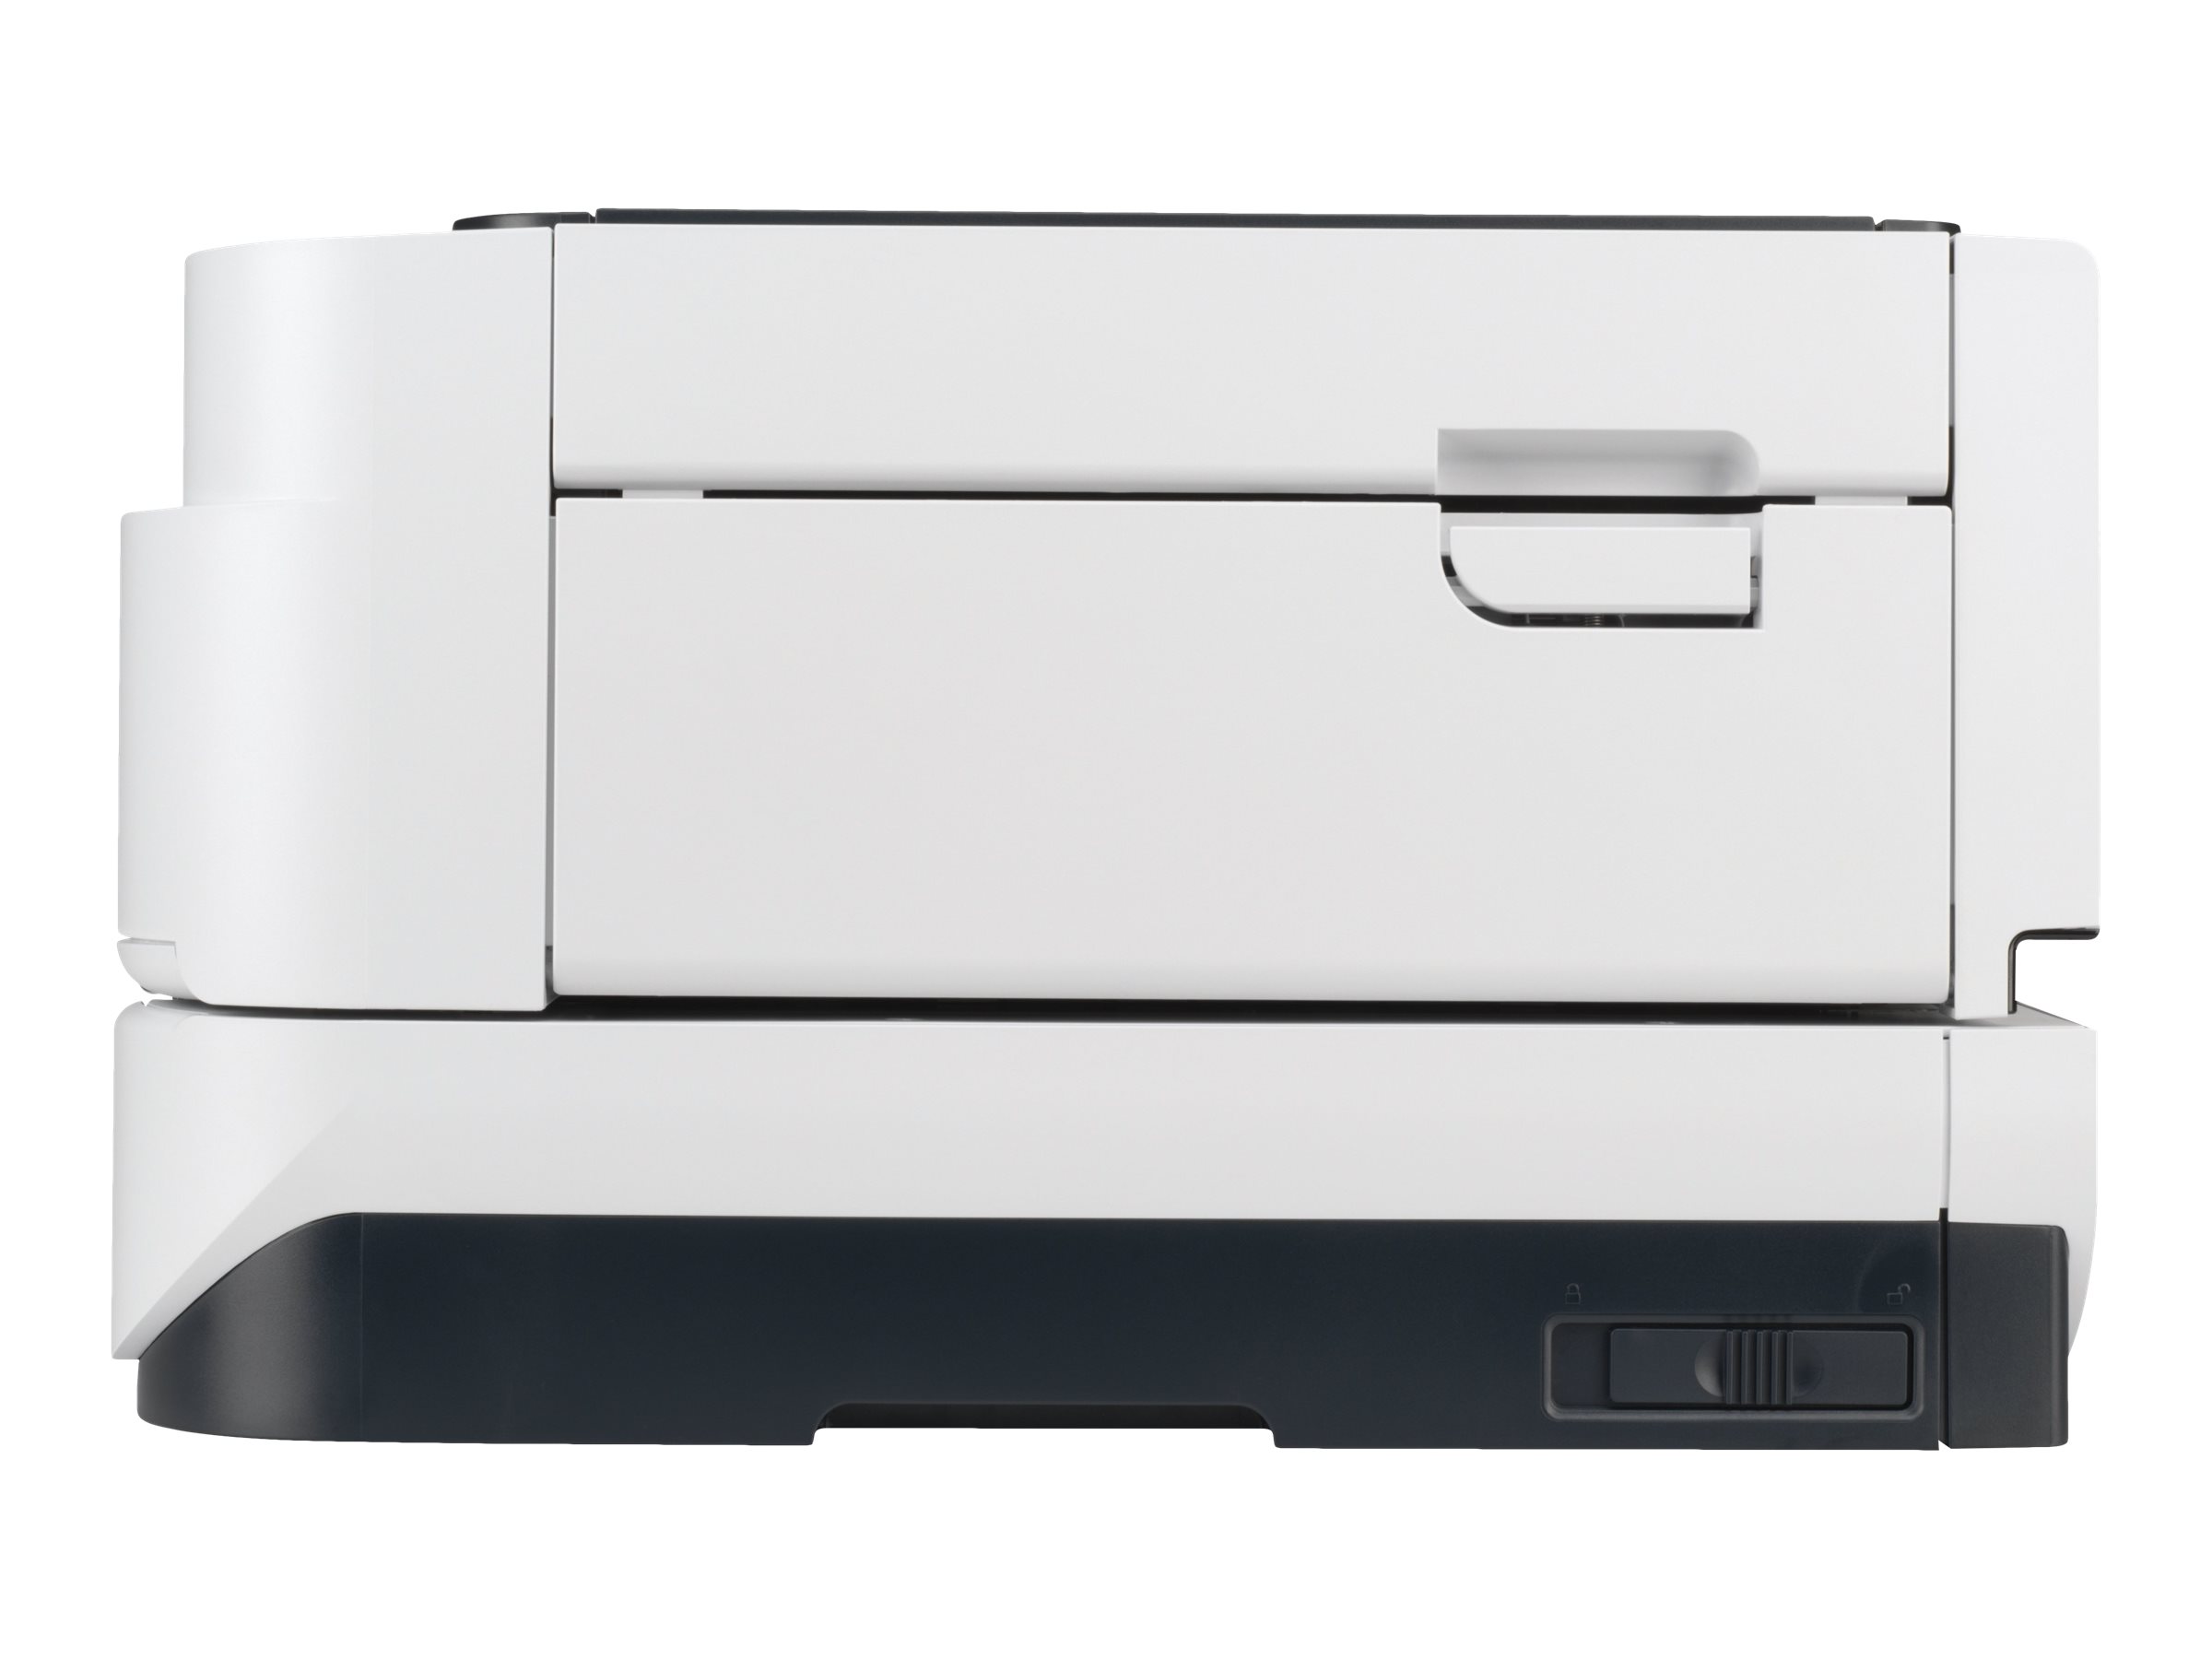 HP ScanJet Enterprise Flow N9120 Flatbed Scanner - Scanner de documents - CCD - Recto-verso - 300 x 864 mm - 600 dpi x 600 dpi - jusqu'à 50 ppm (mono) / jusqu'à 50 ppm (couleur) - Chargeur automatique de documents (200 feuilles) - jusqu'à 5000 pages par jour - USB 2.0 - L2683B#B19 - Scanneurs de documents